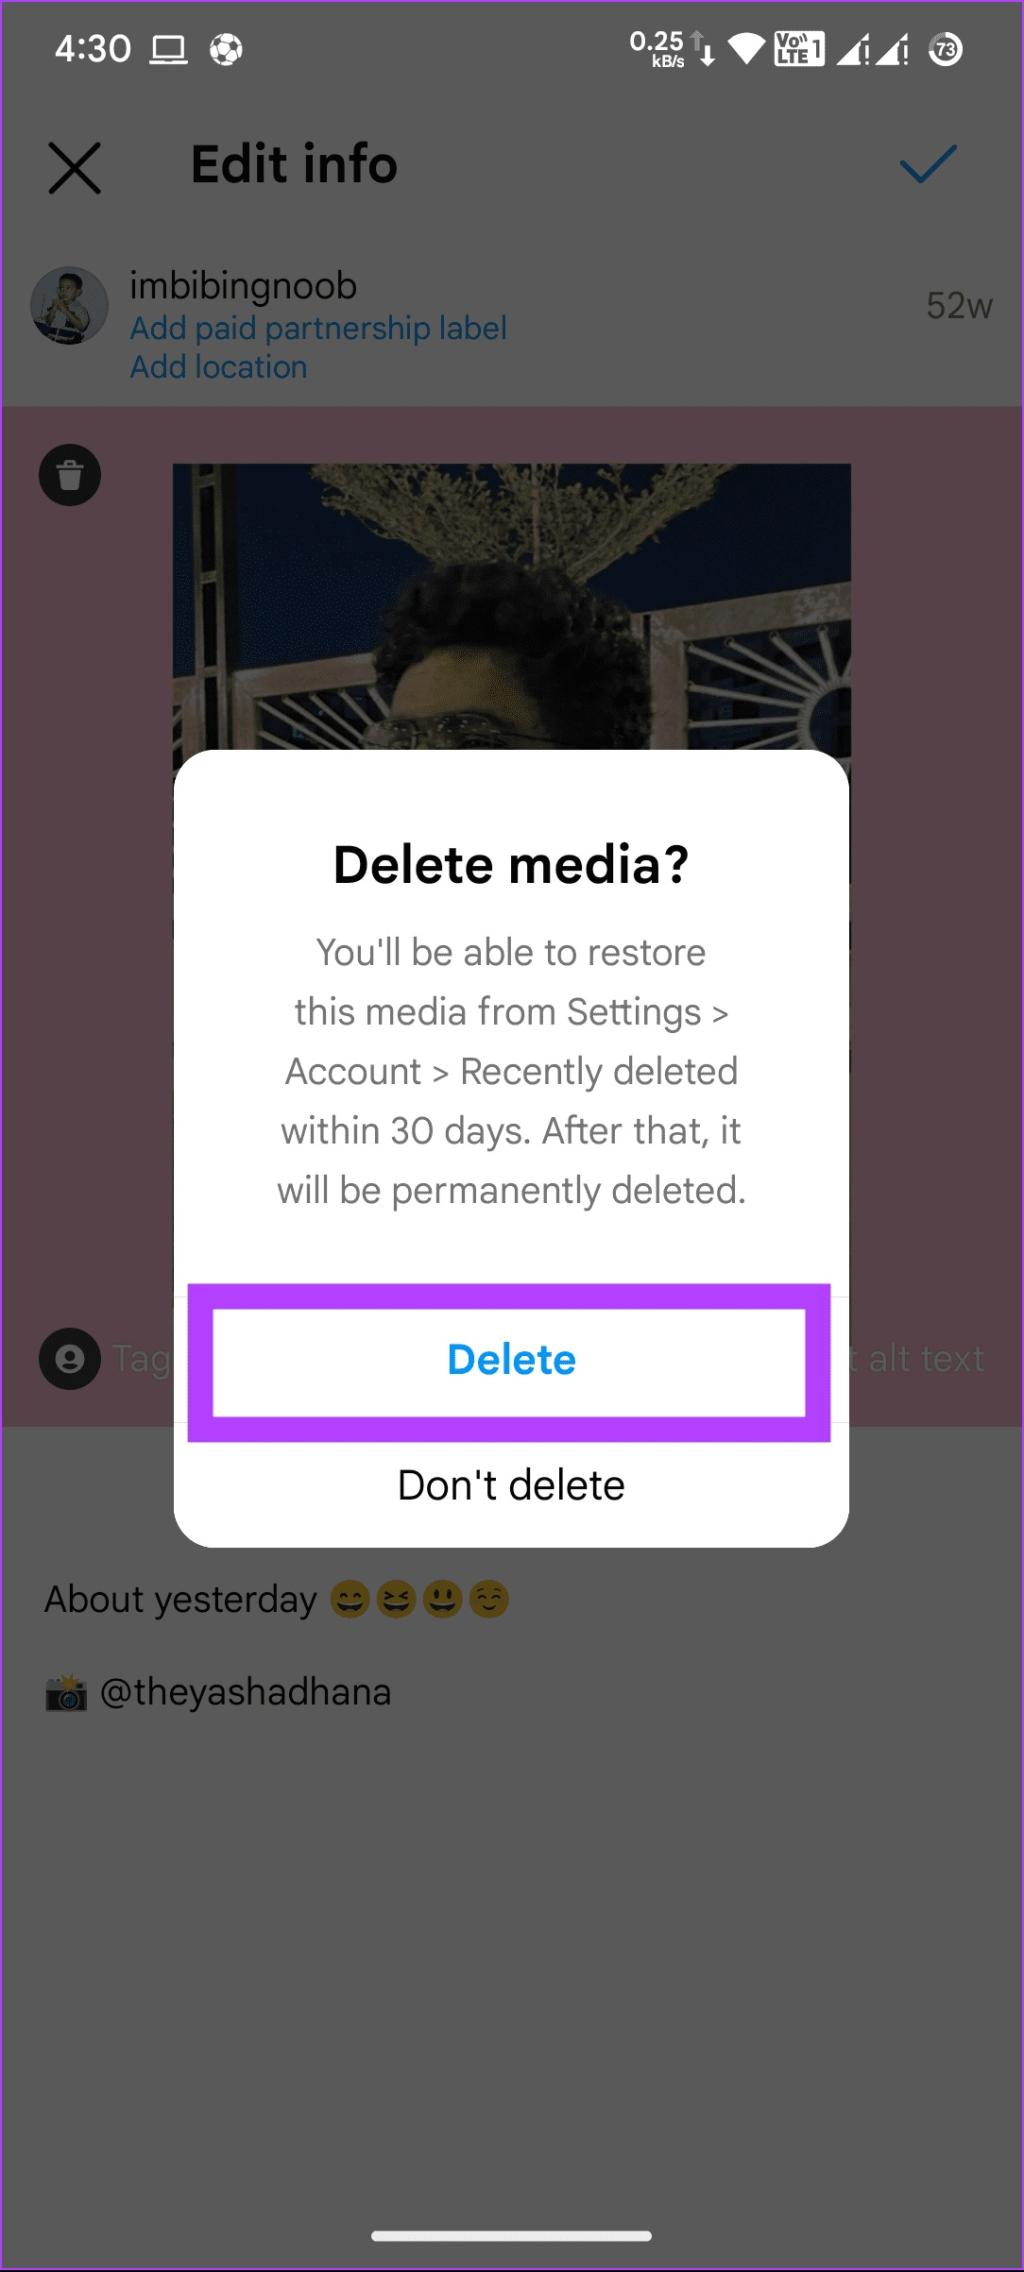 نحوه حذف یک عکس در پست کاروسل اینستاگرام از طریق گوشی 3 